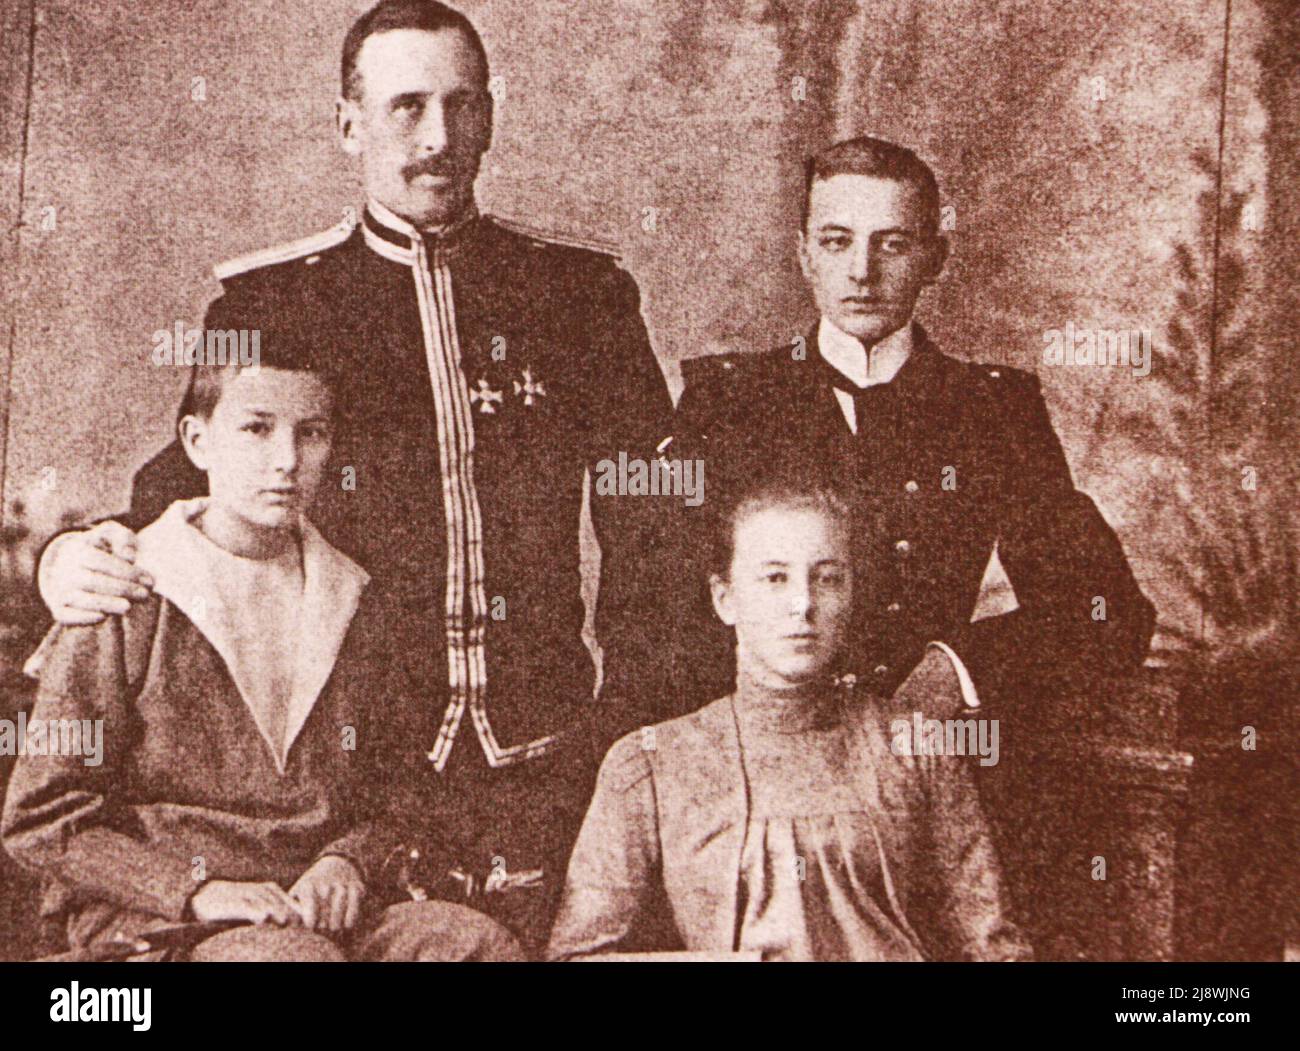 Le commandant de la division de Crimée de l'armée russe - le comte Fedor Arturovitch Keller avec sa famille. Photo du début du 20th siècle. Banque D'Images